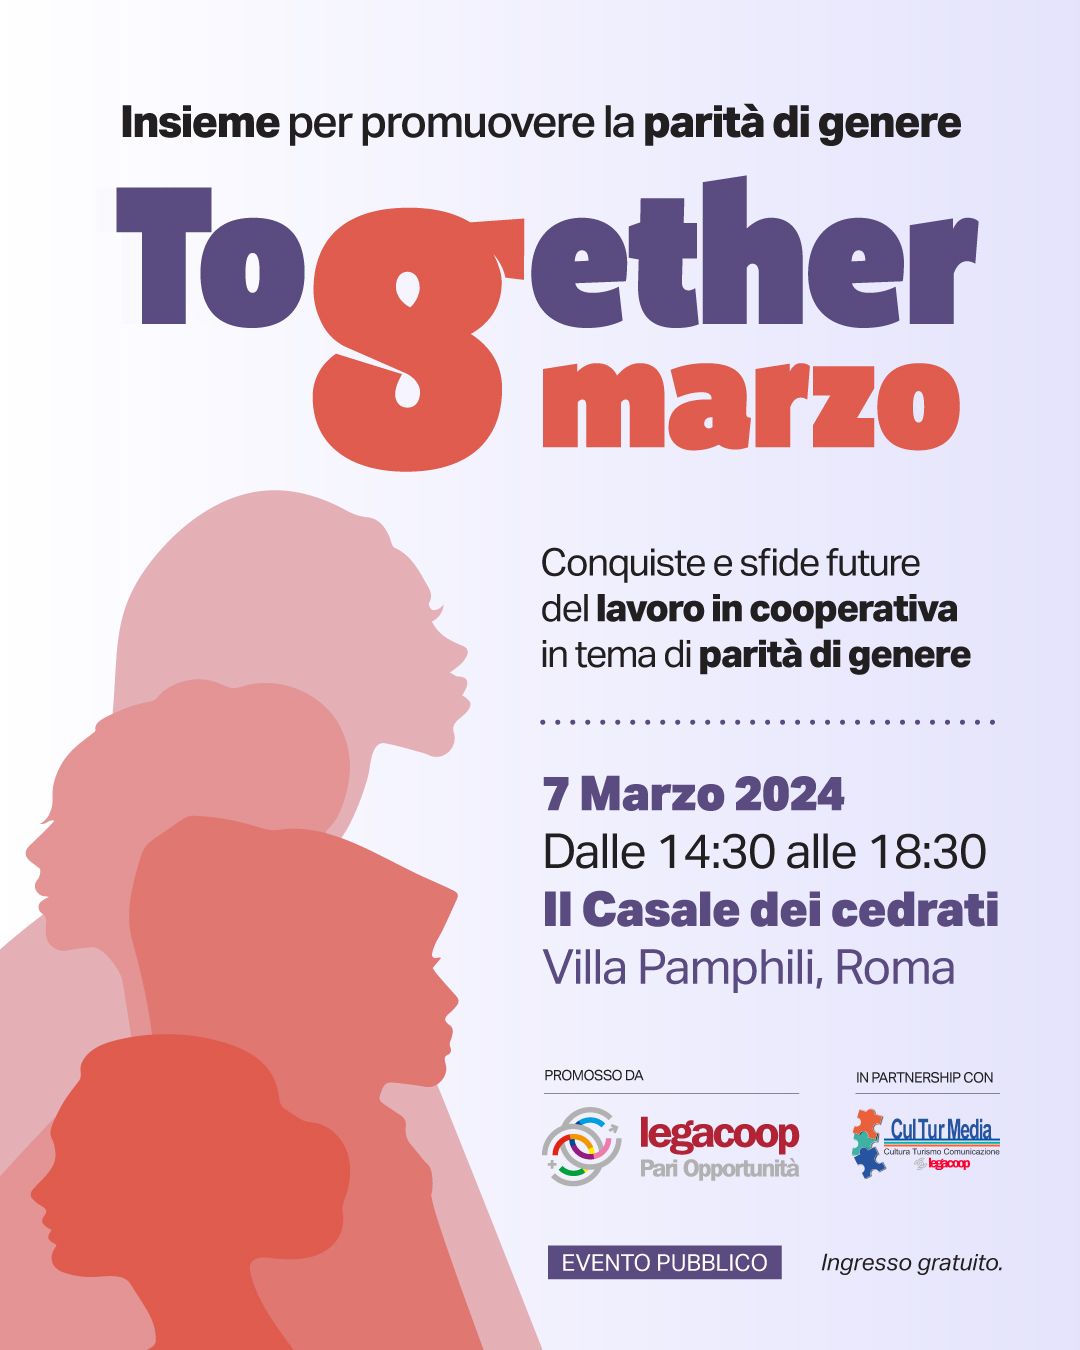 Together 8 marzo: l’evento di Commissione Pari Opportunità e Culturmedia Legacoop